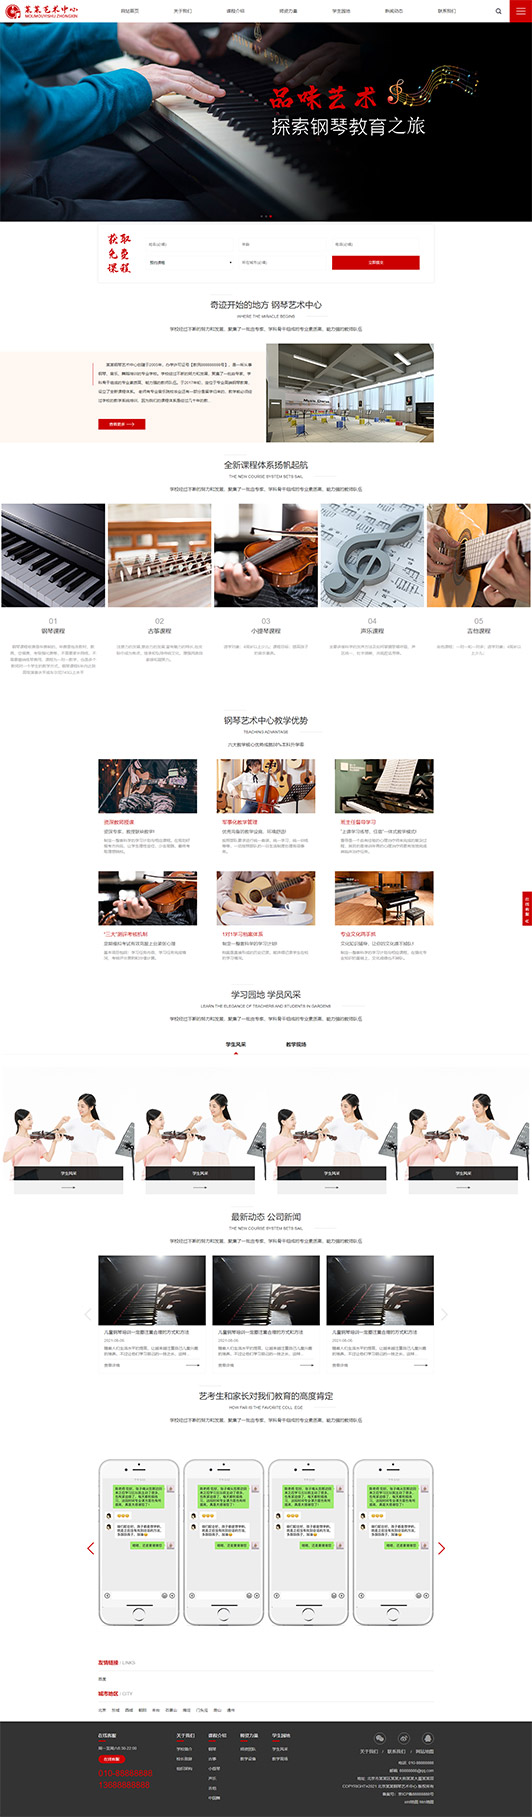 上海钢琴艺术培训公司响应式企业网站